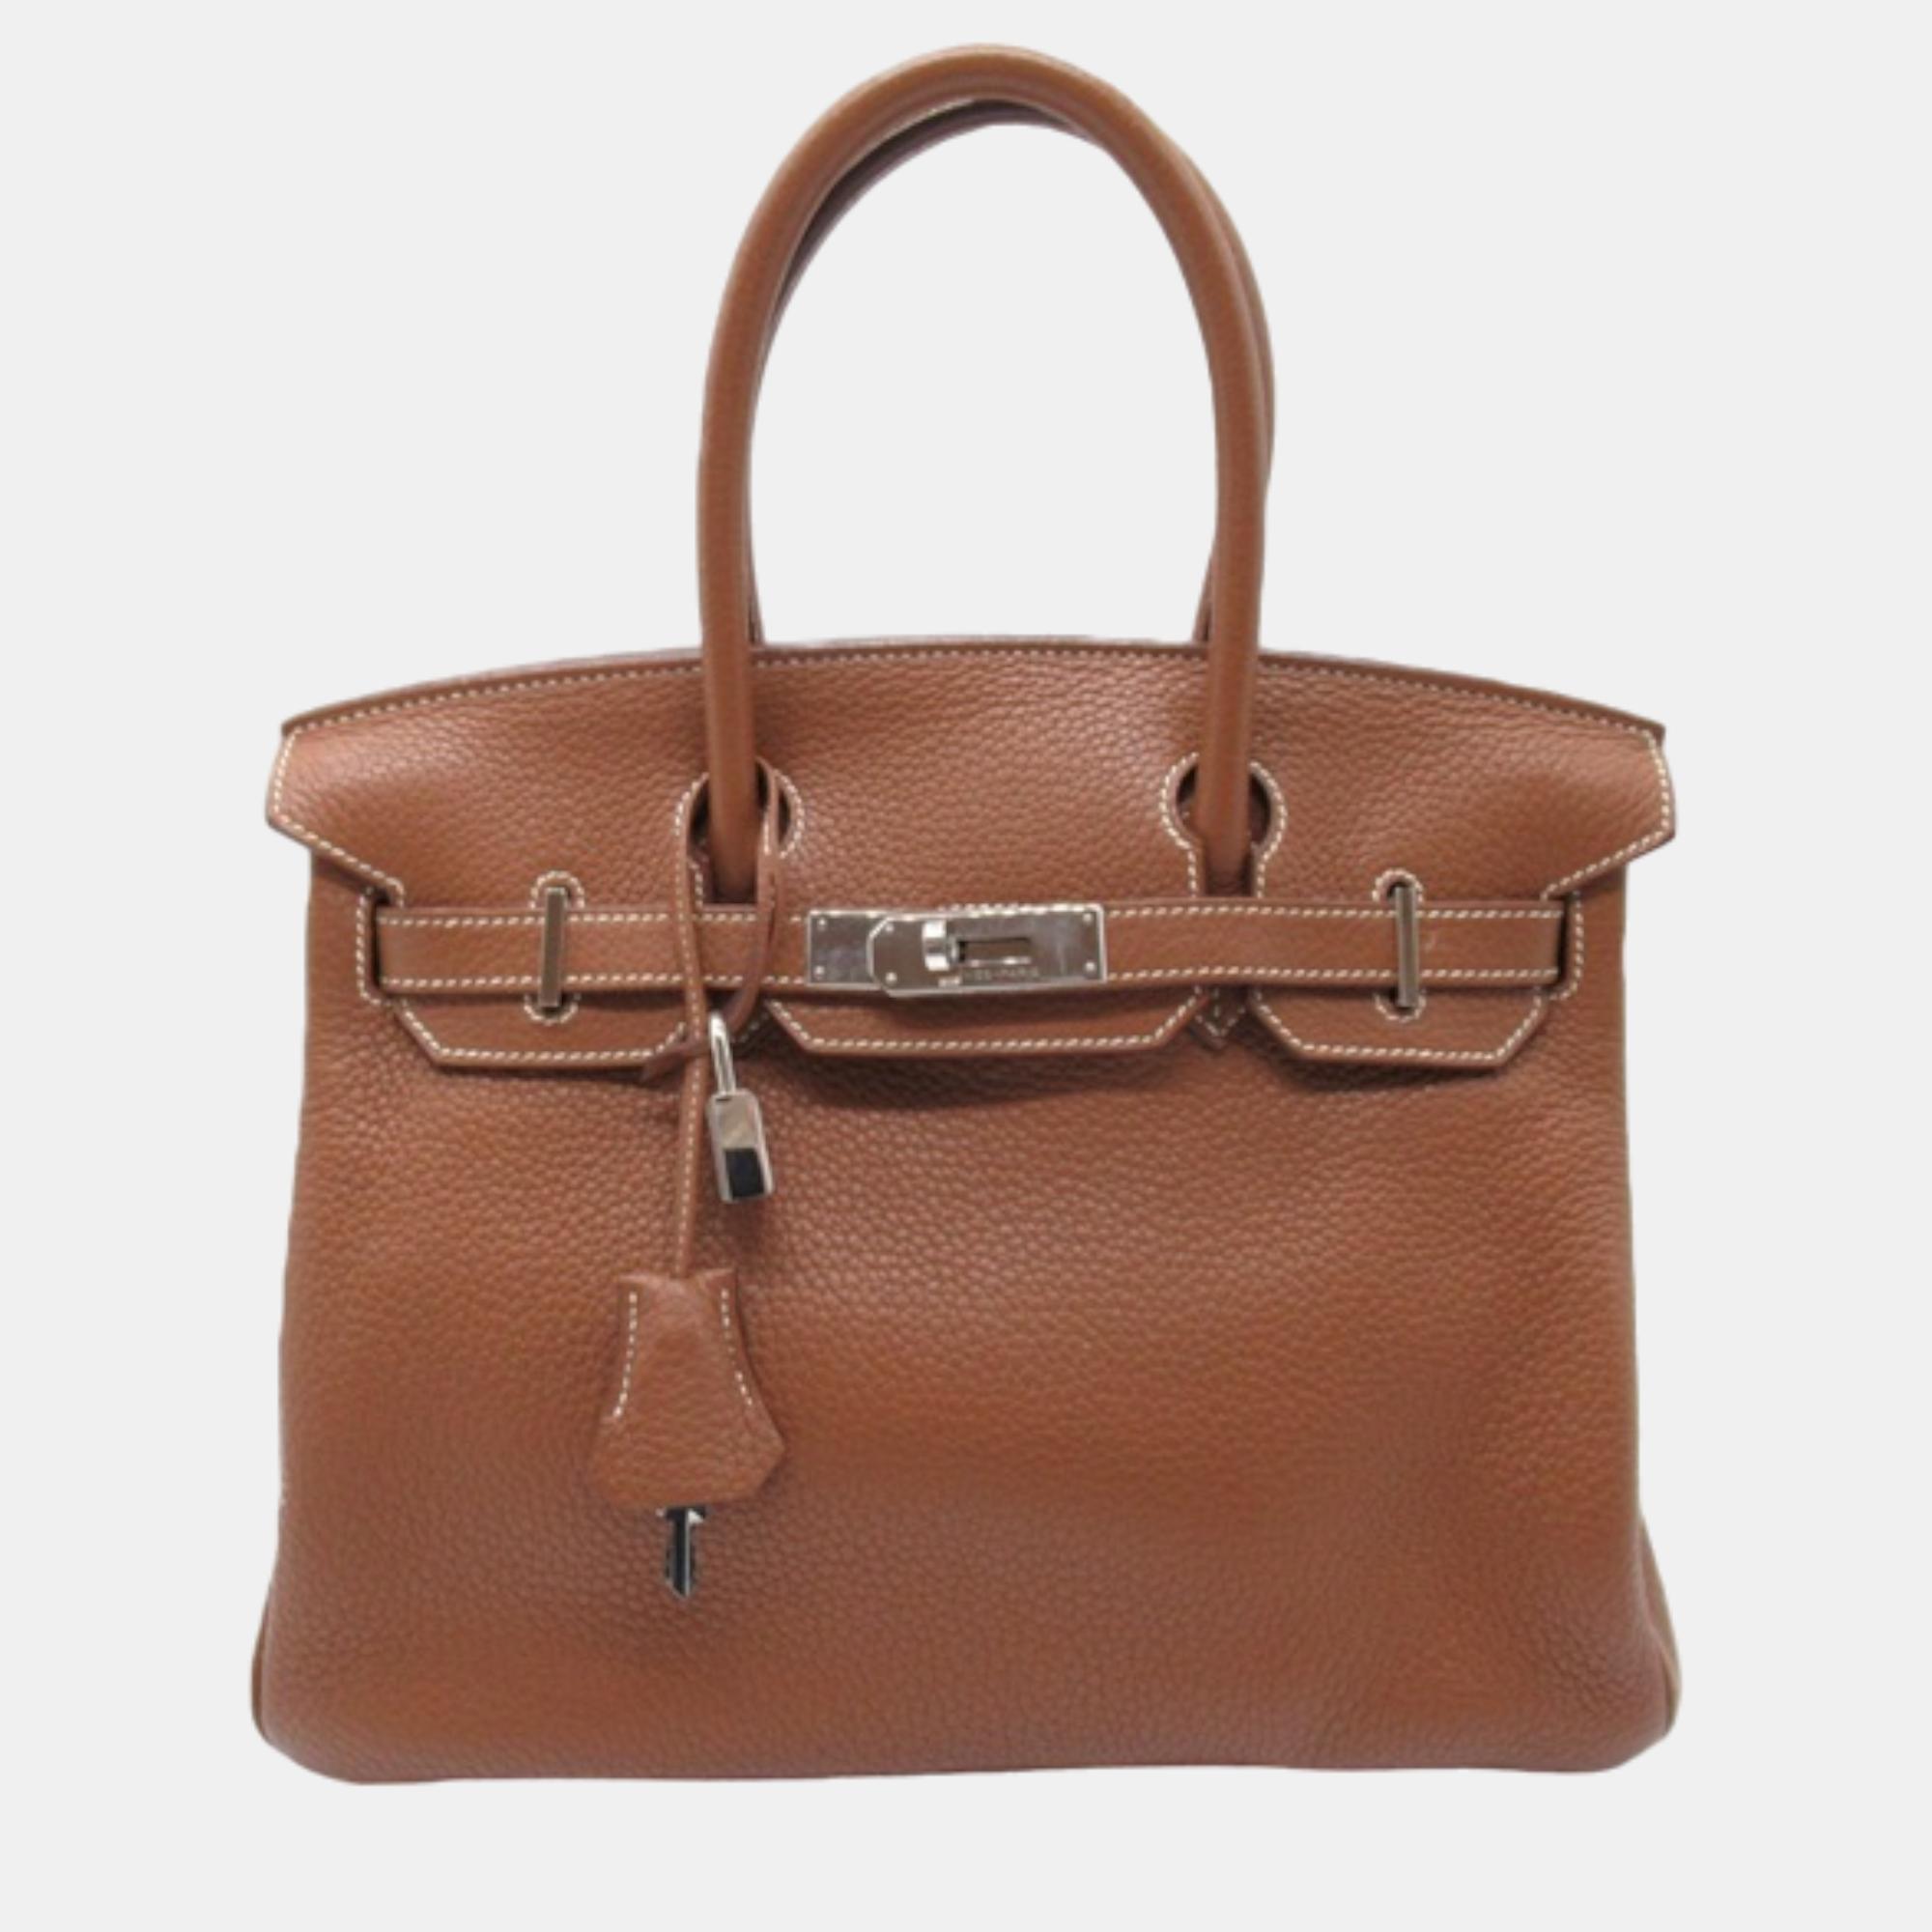 Pre-owned Hermes Brown Leather Clemence Birkin 30 Handbag